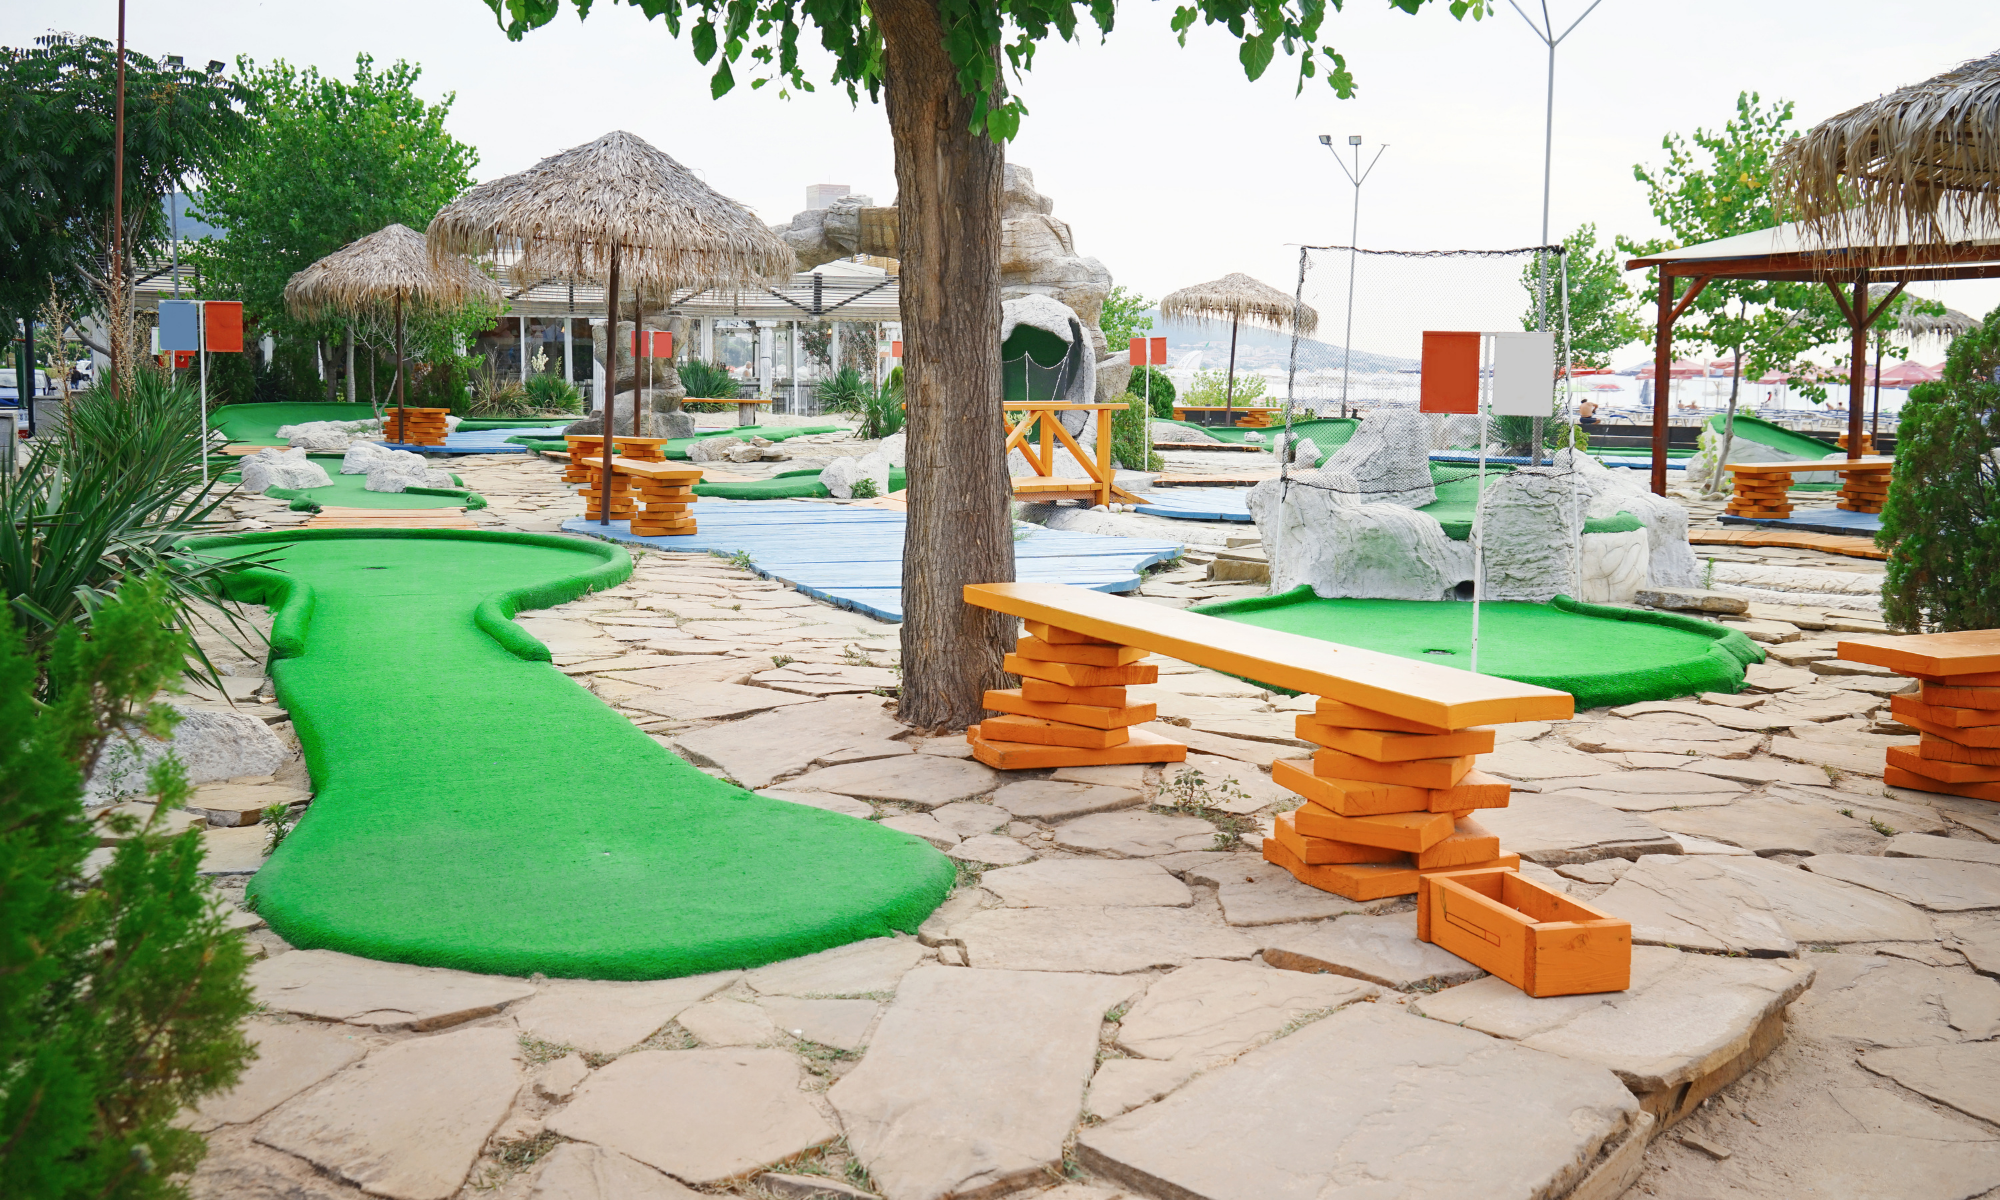 Tropical themed minigolf course